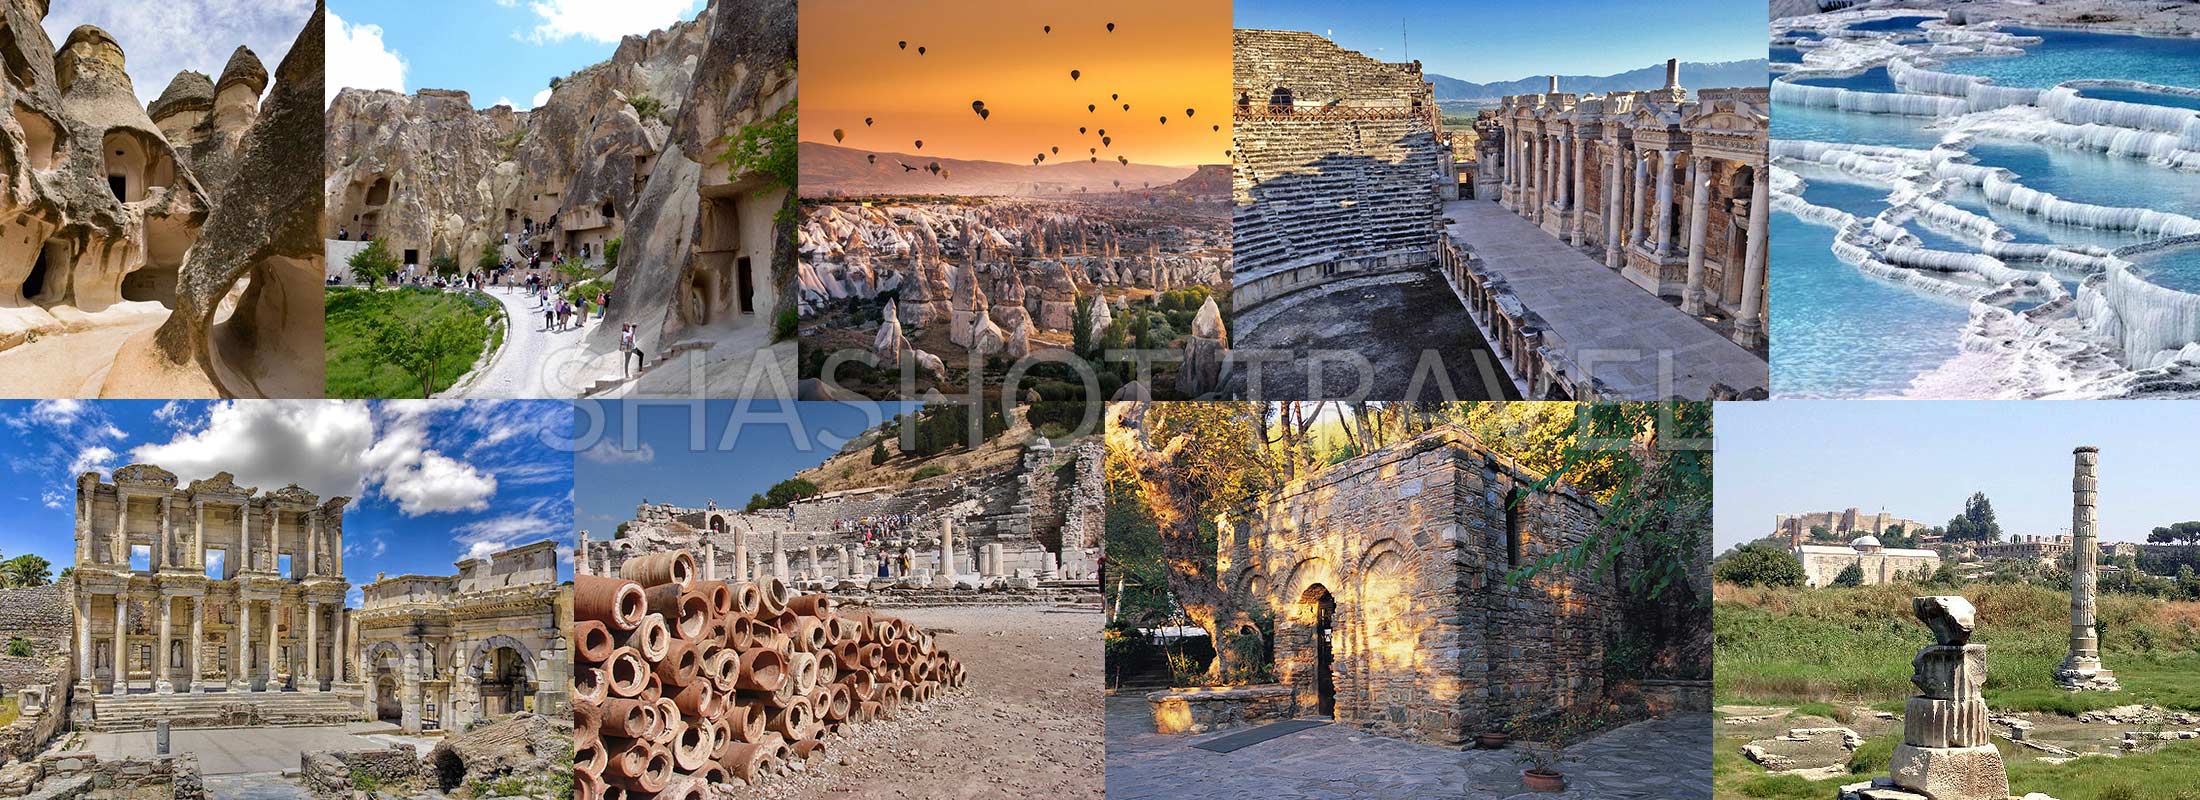 turquia-excursion-tours-4-dias-capadocia-pamukkale-hierapolis-efeso-virgen-maria-casa-sirince